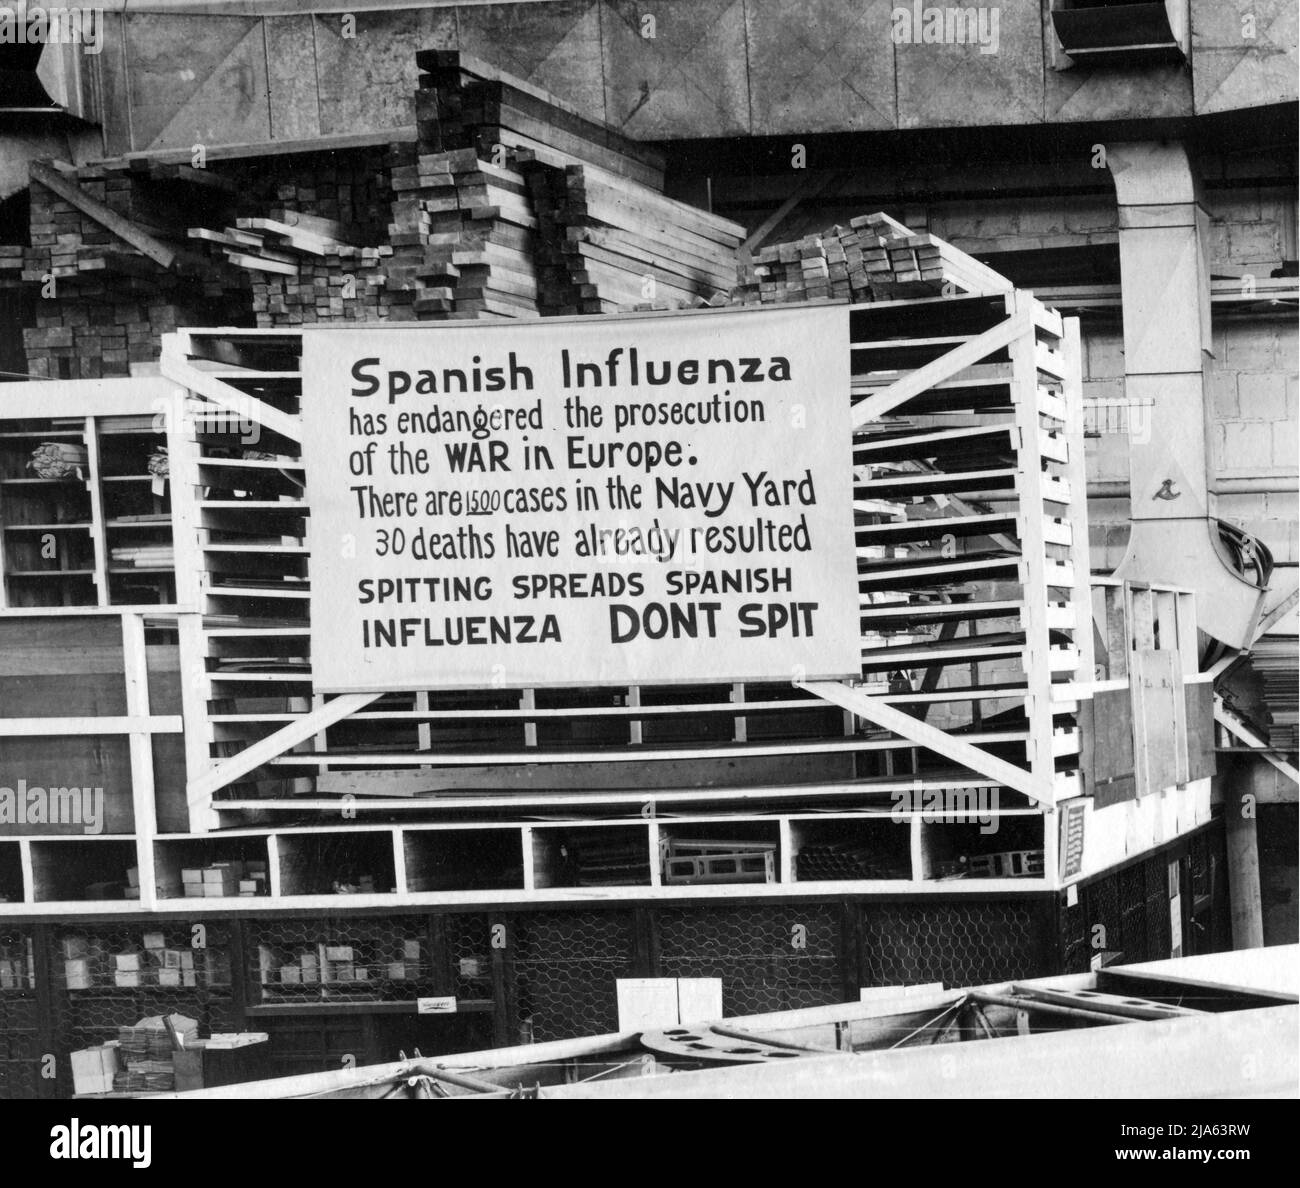 Spanish Influenza pandemic sign Stock Photo